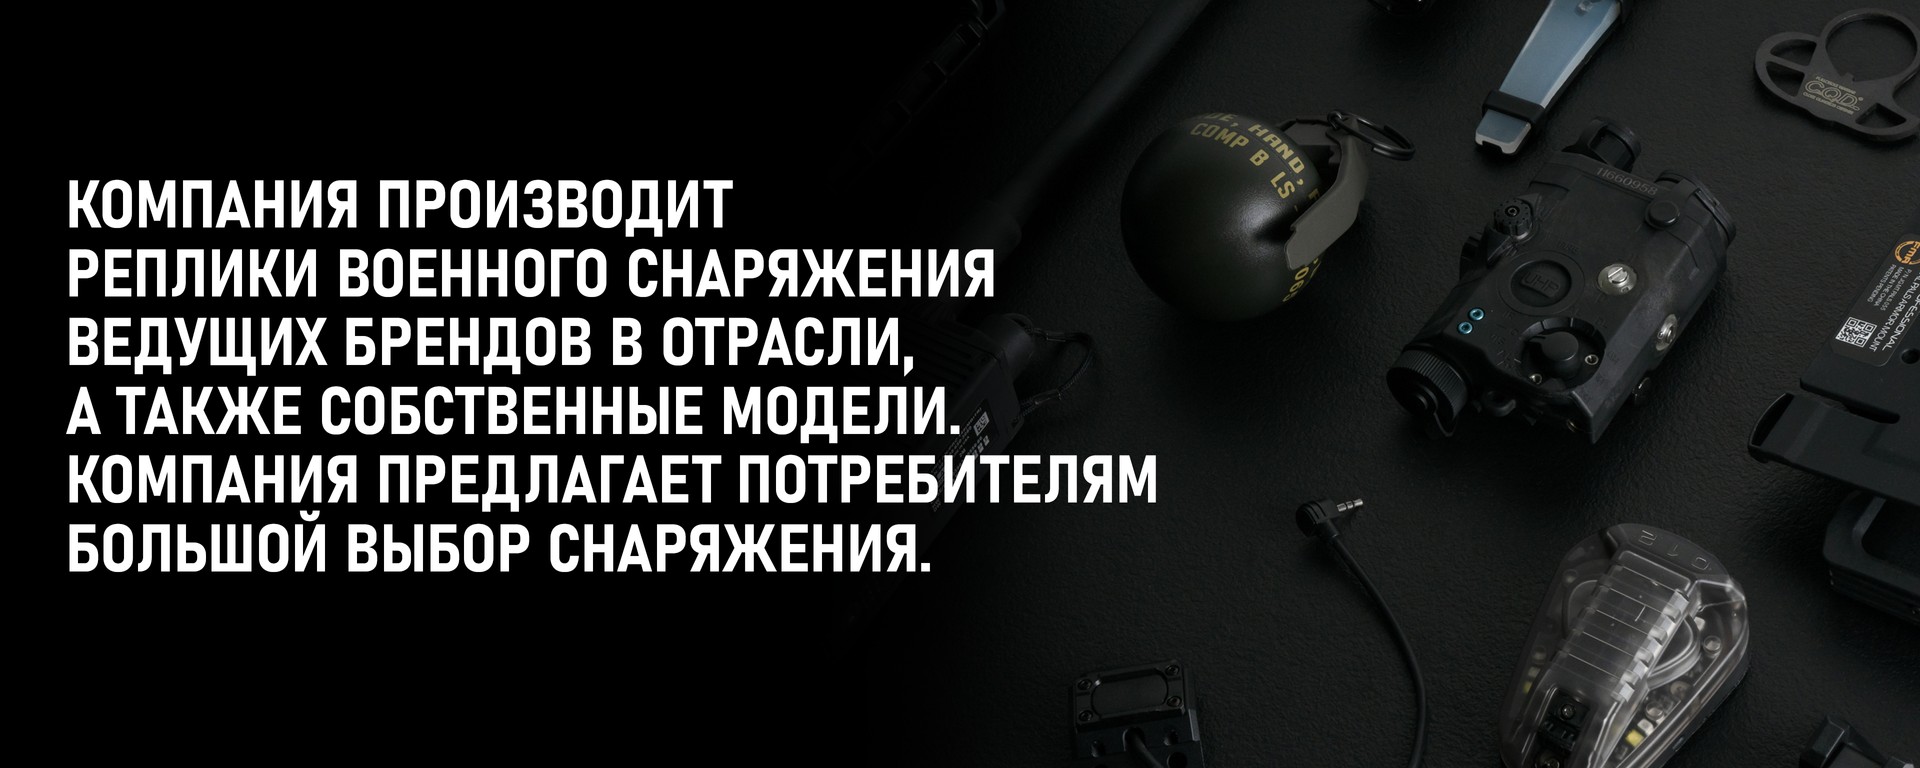 Купить тактическое и страйкбольное снаряжение FMA в Украине